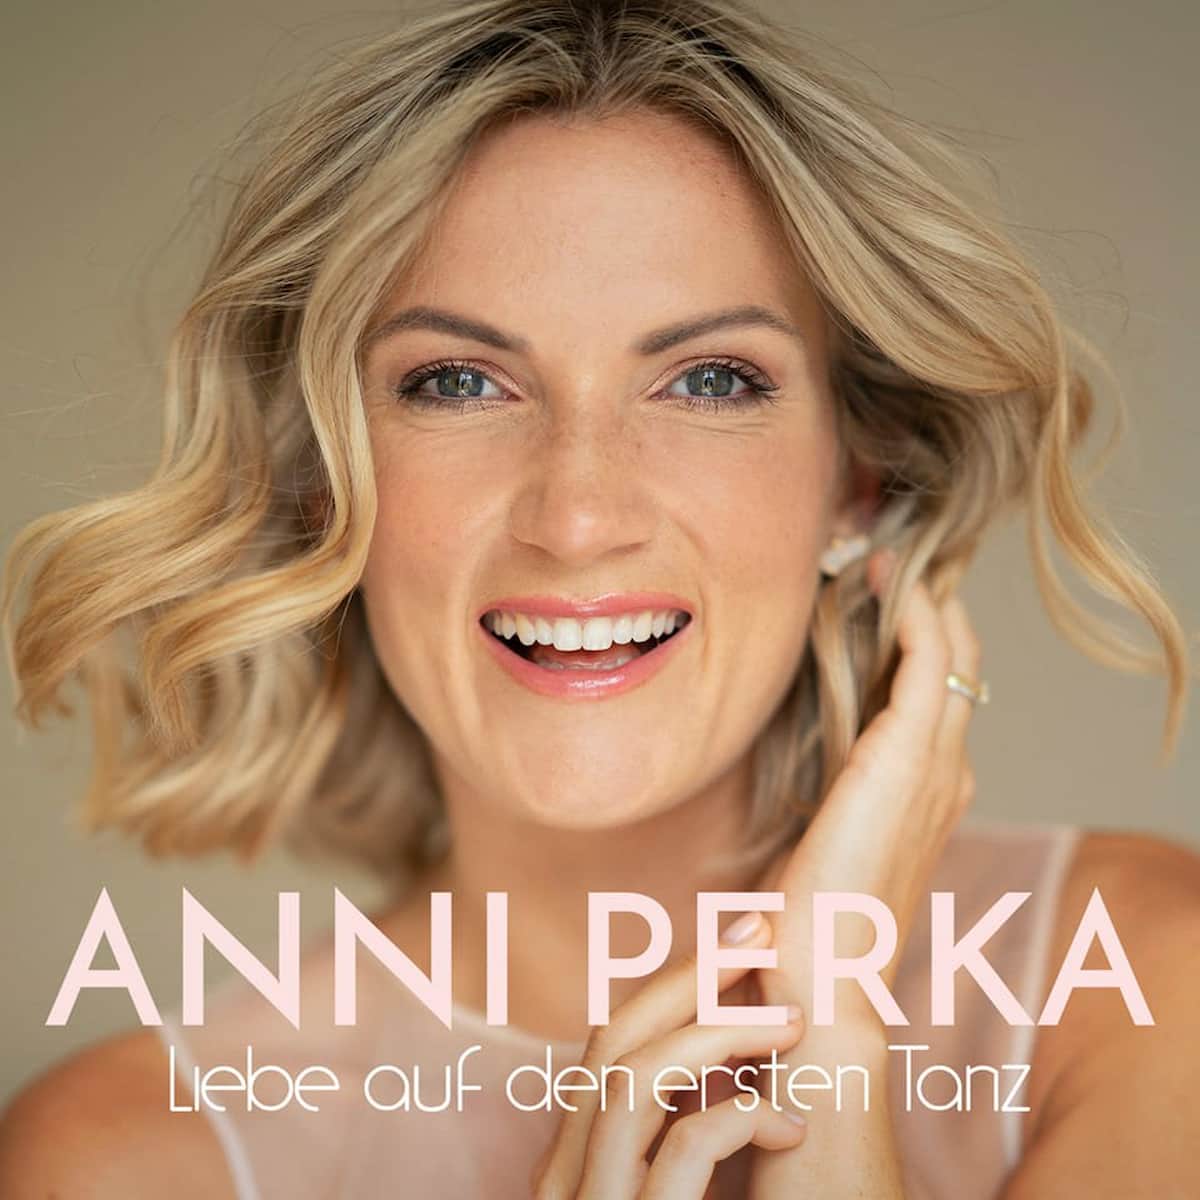 Anni Perka 2023 - hier im Bild das Cover zur Single "Liebe auf den ersten Tanz" vom Mai 2023 mit Anni Perka im Portrait